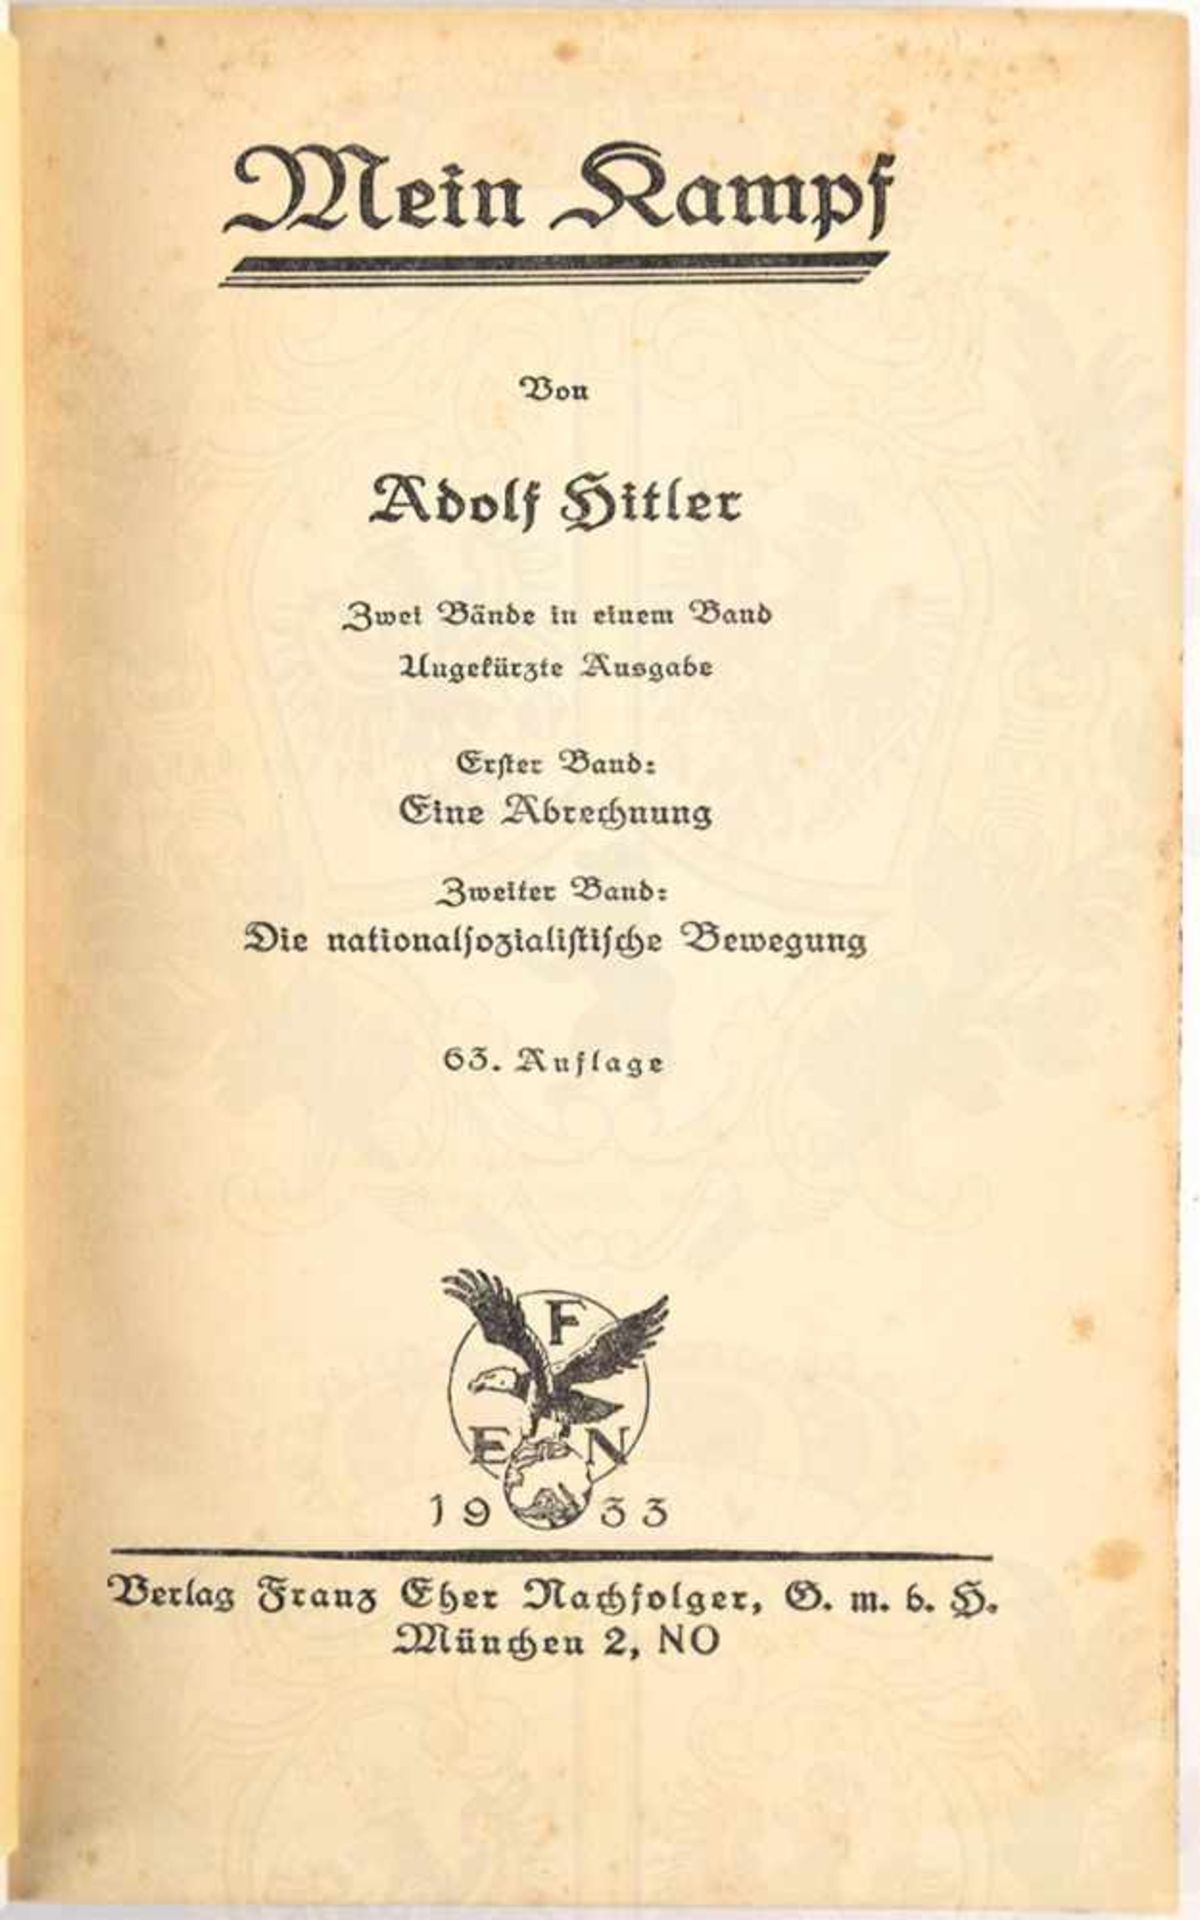 MEIN KAMPF, A. Hitler, Volksausgabe, Eher Verlag, München 1933, 781 S., 1 Porträtbild, goldgepr. - Bild 3 aus 3